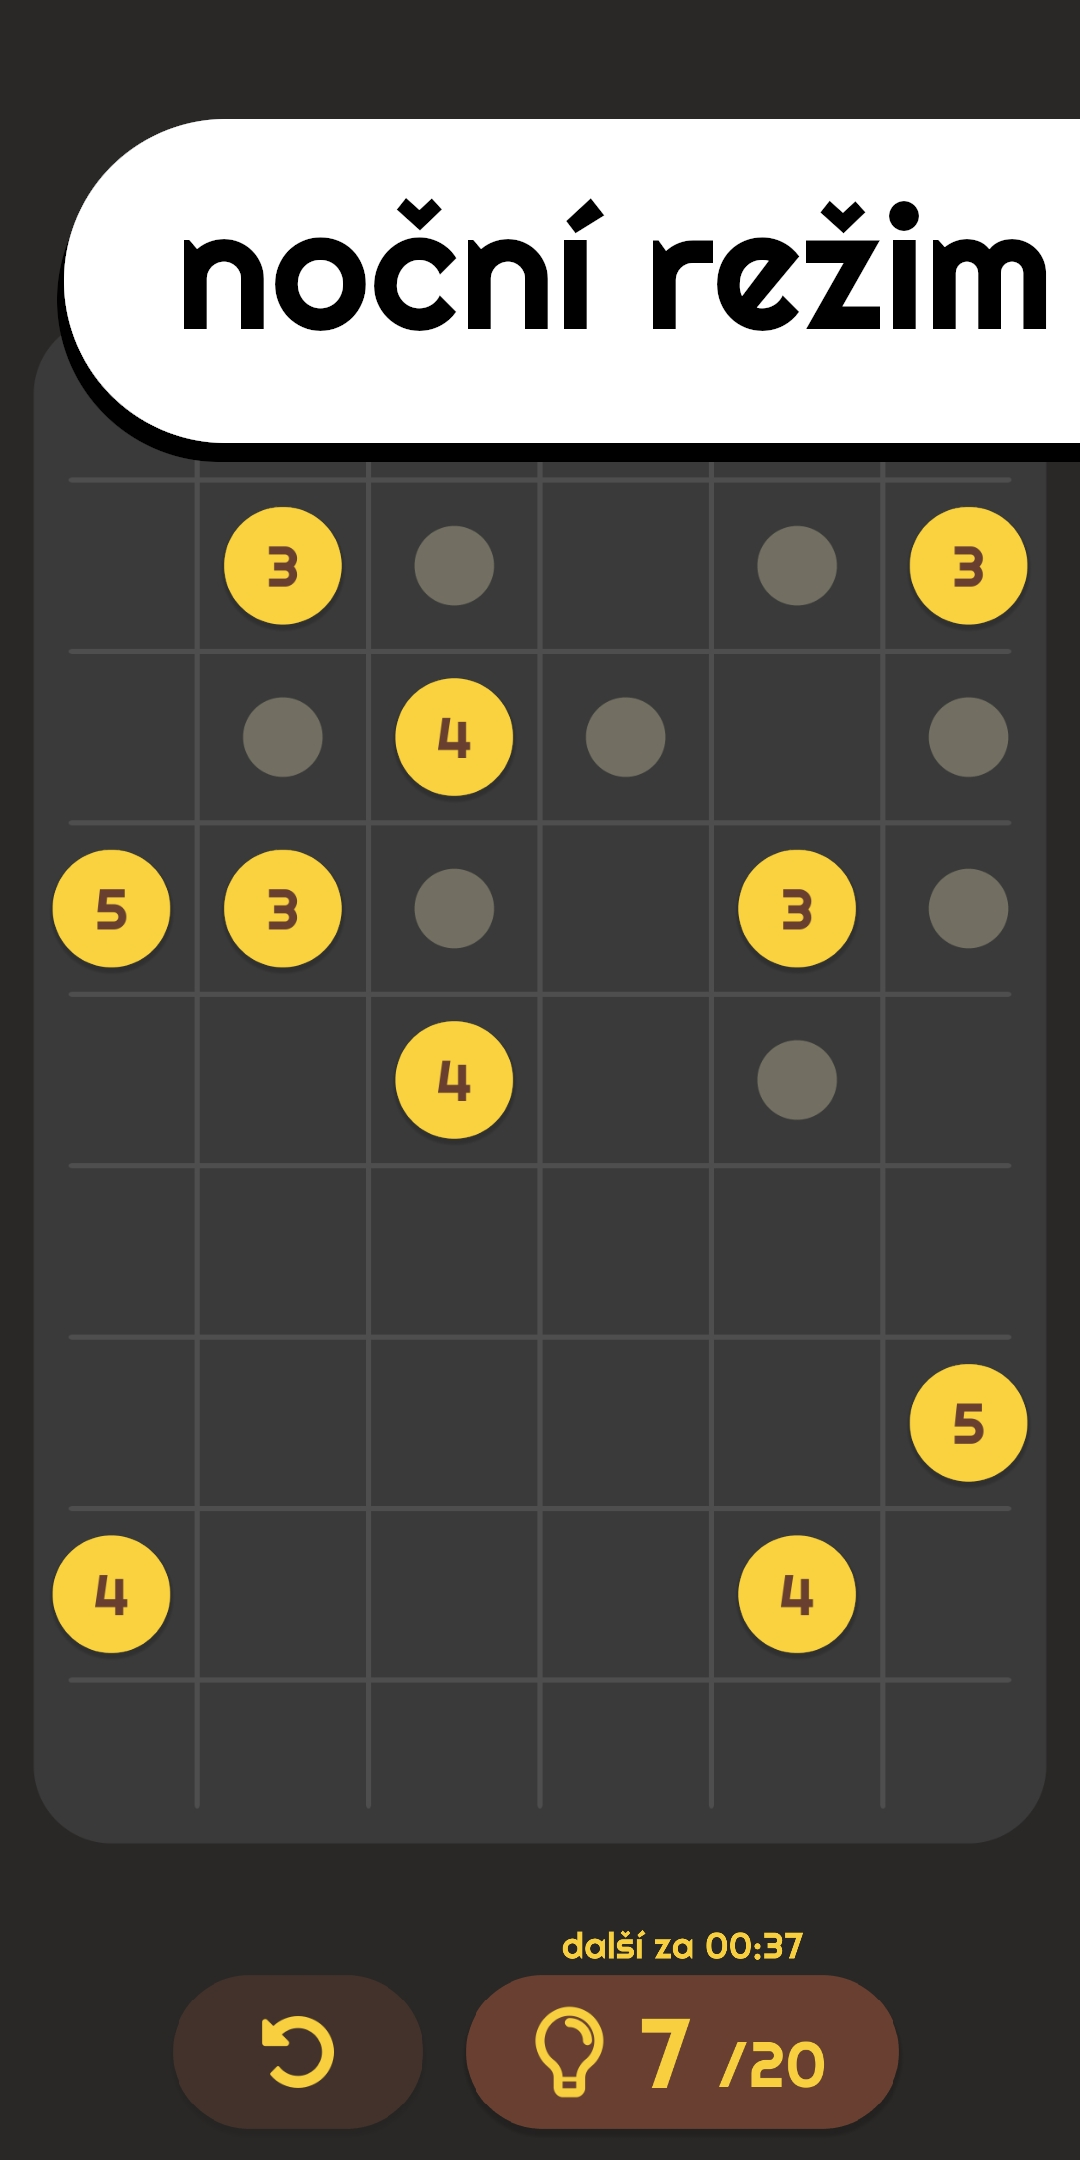 Lungo - logická hra pro Android - screenshot 4